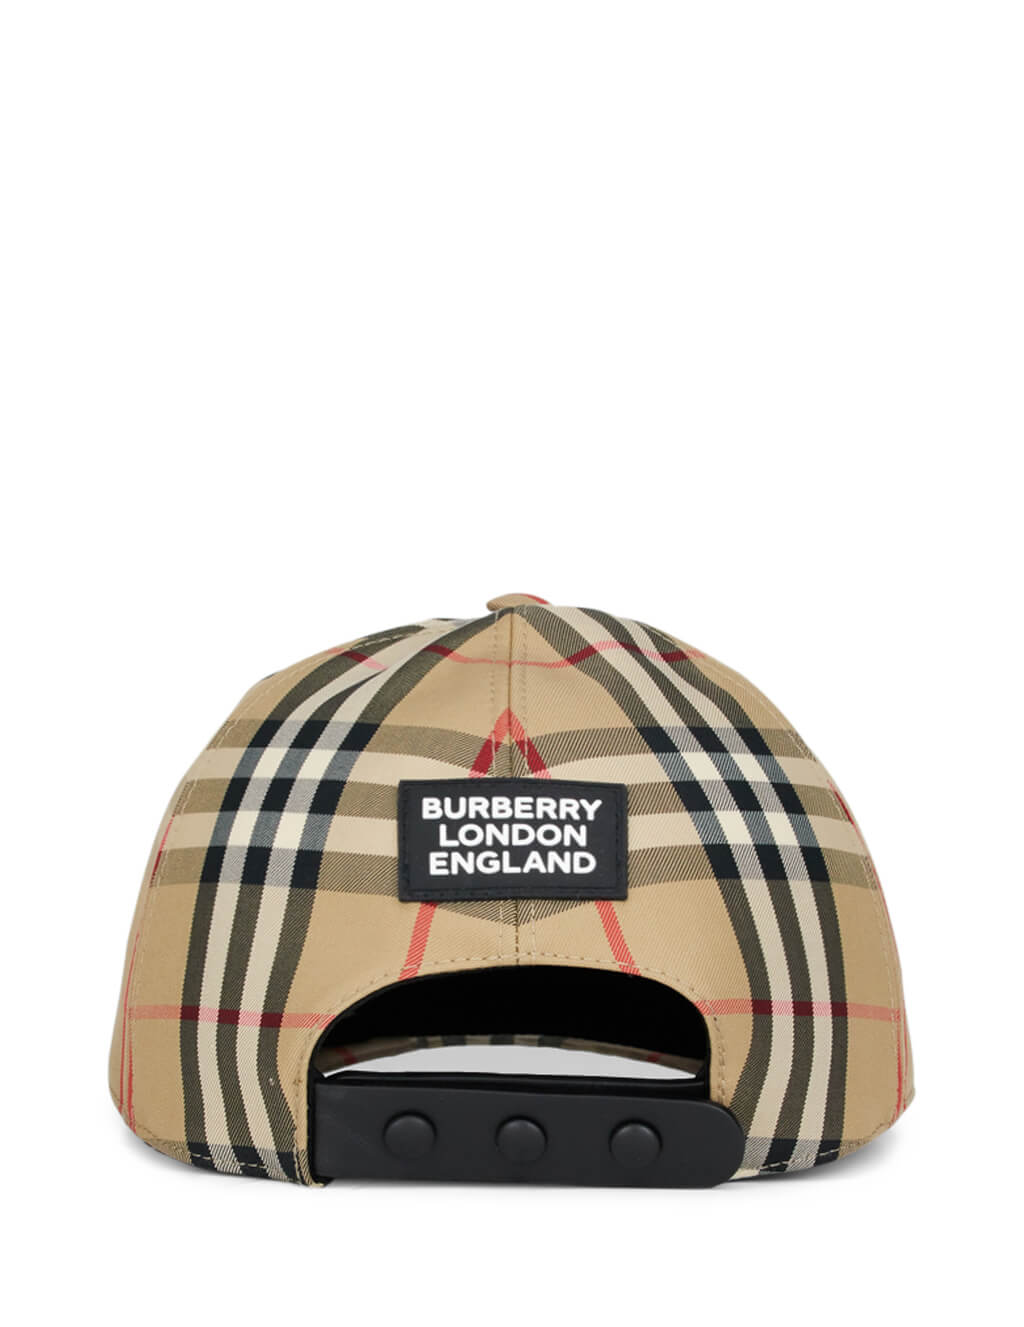 mens burberry hats caps